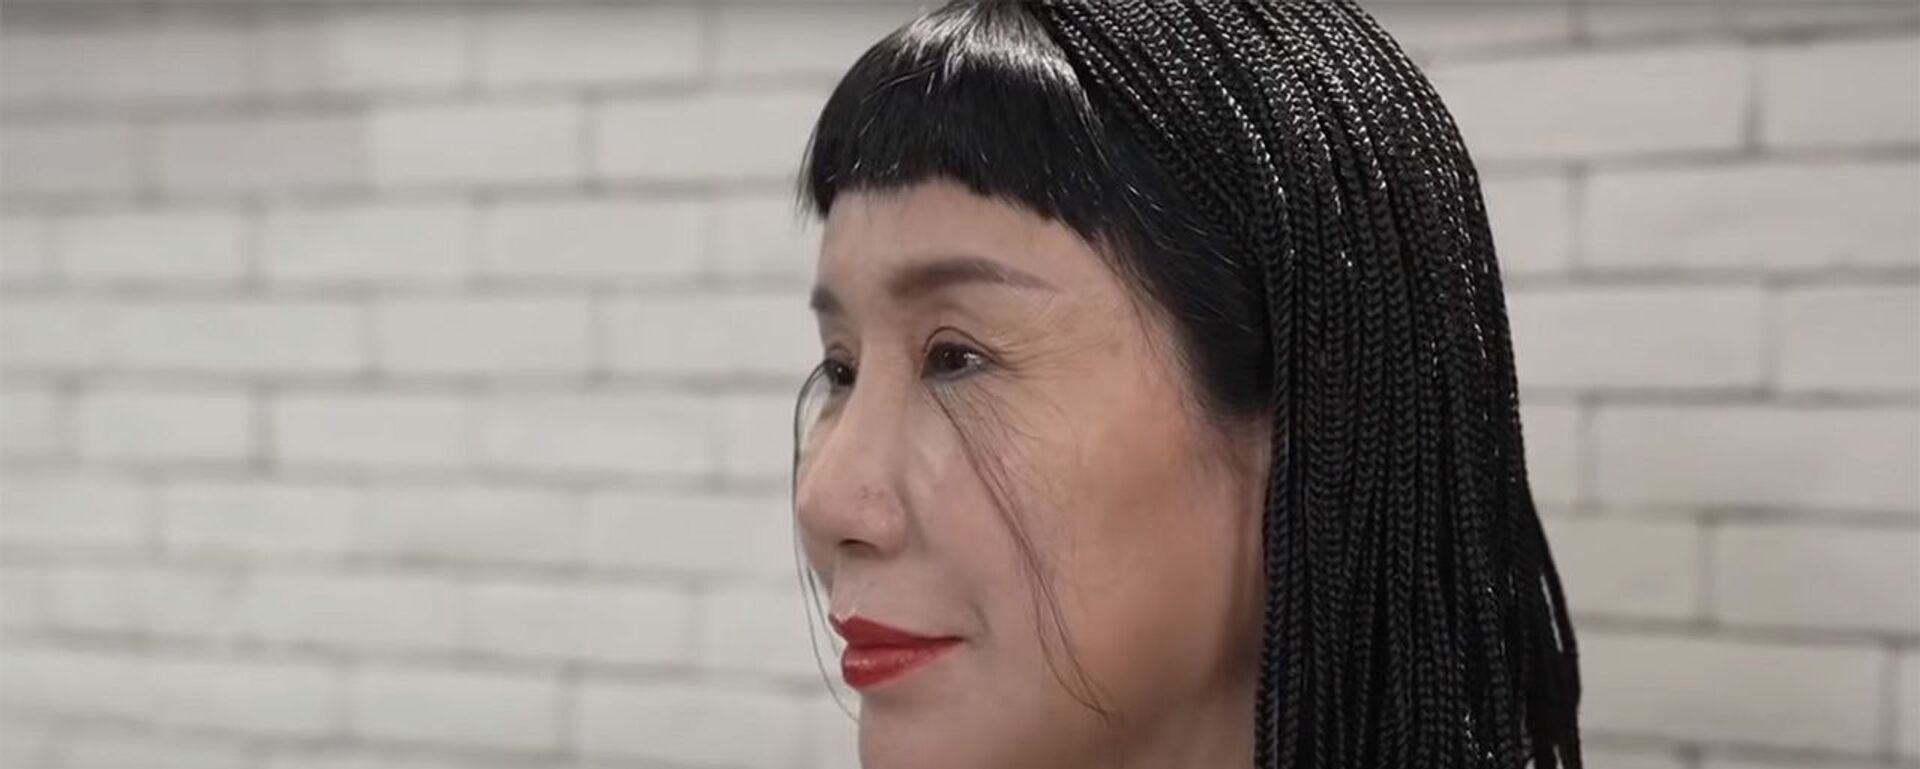 Китаянка отрастила двадцатисантиметровые ресницы — как она выглядит. Видео - Sputnik Кыргызстан, 1920, 15.06.2021